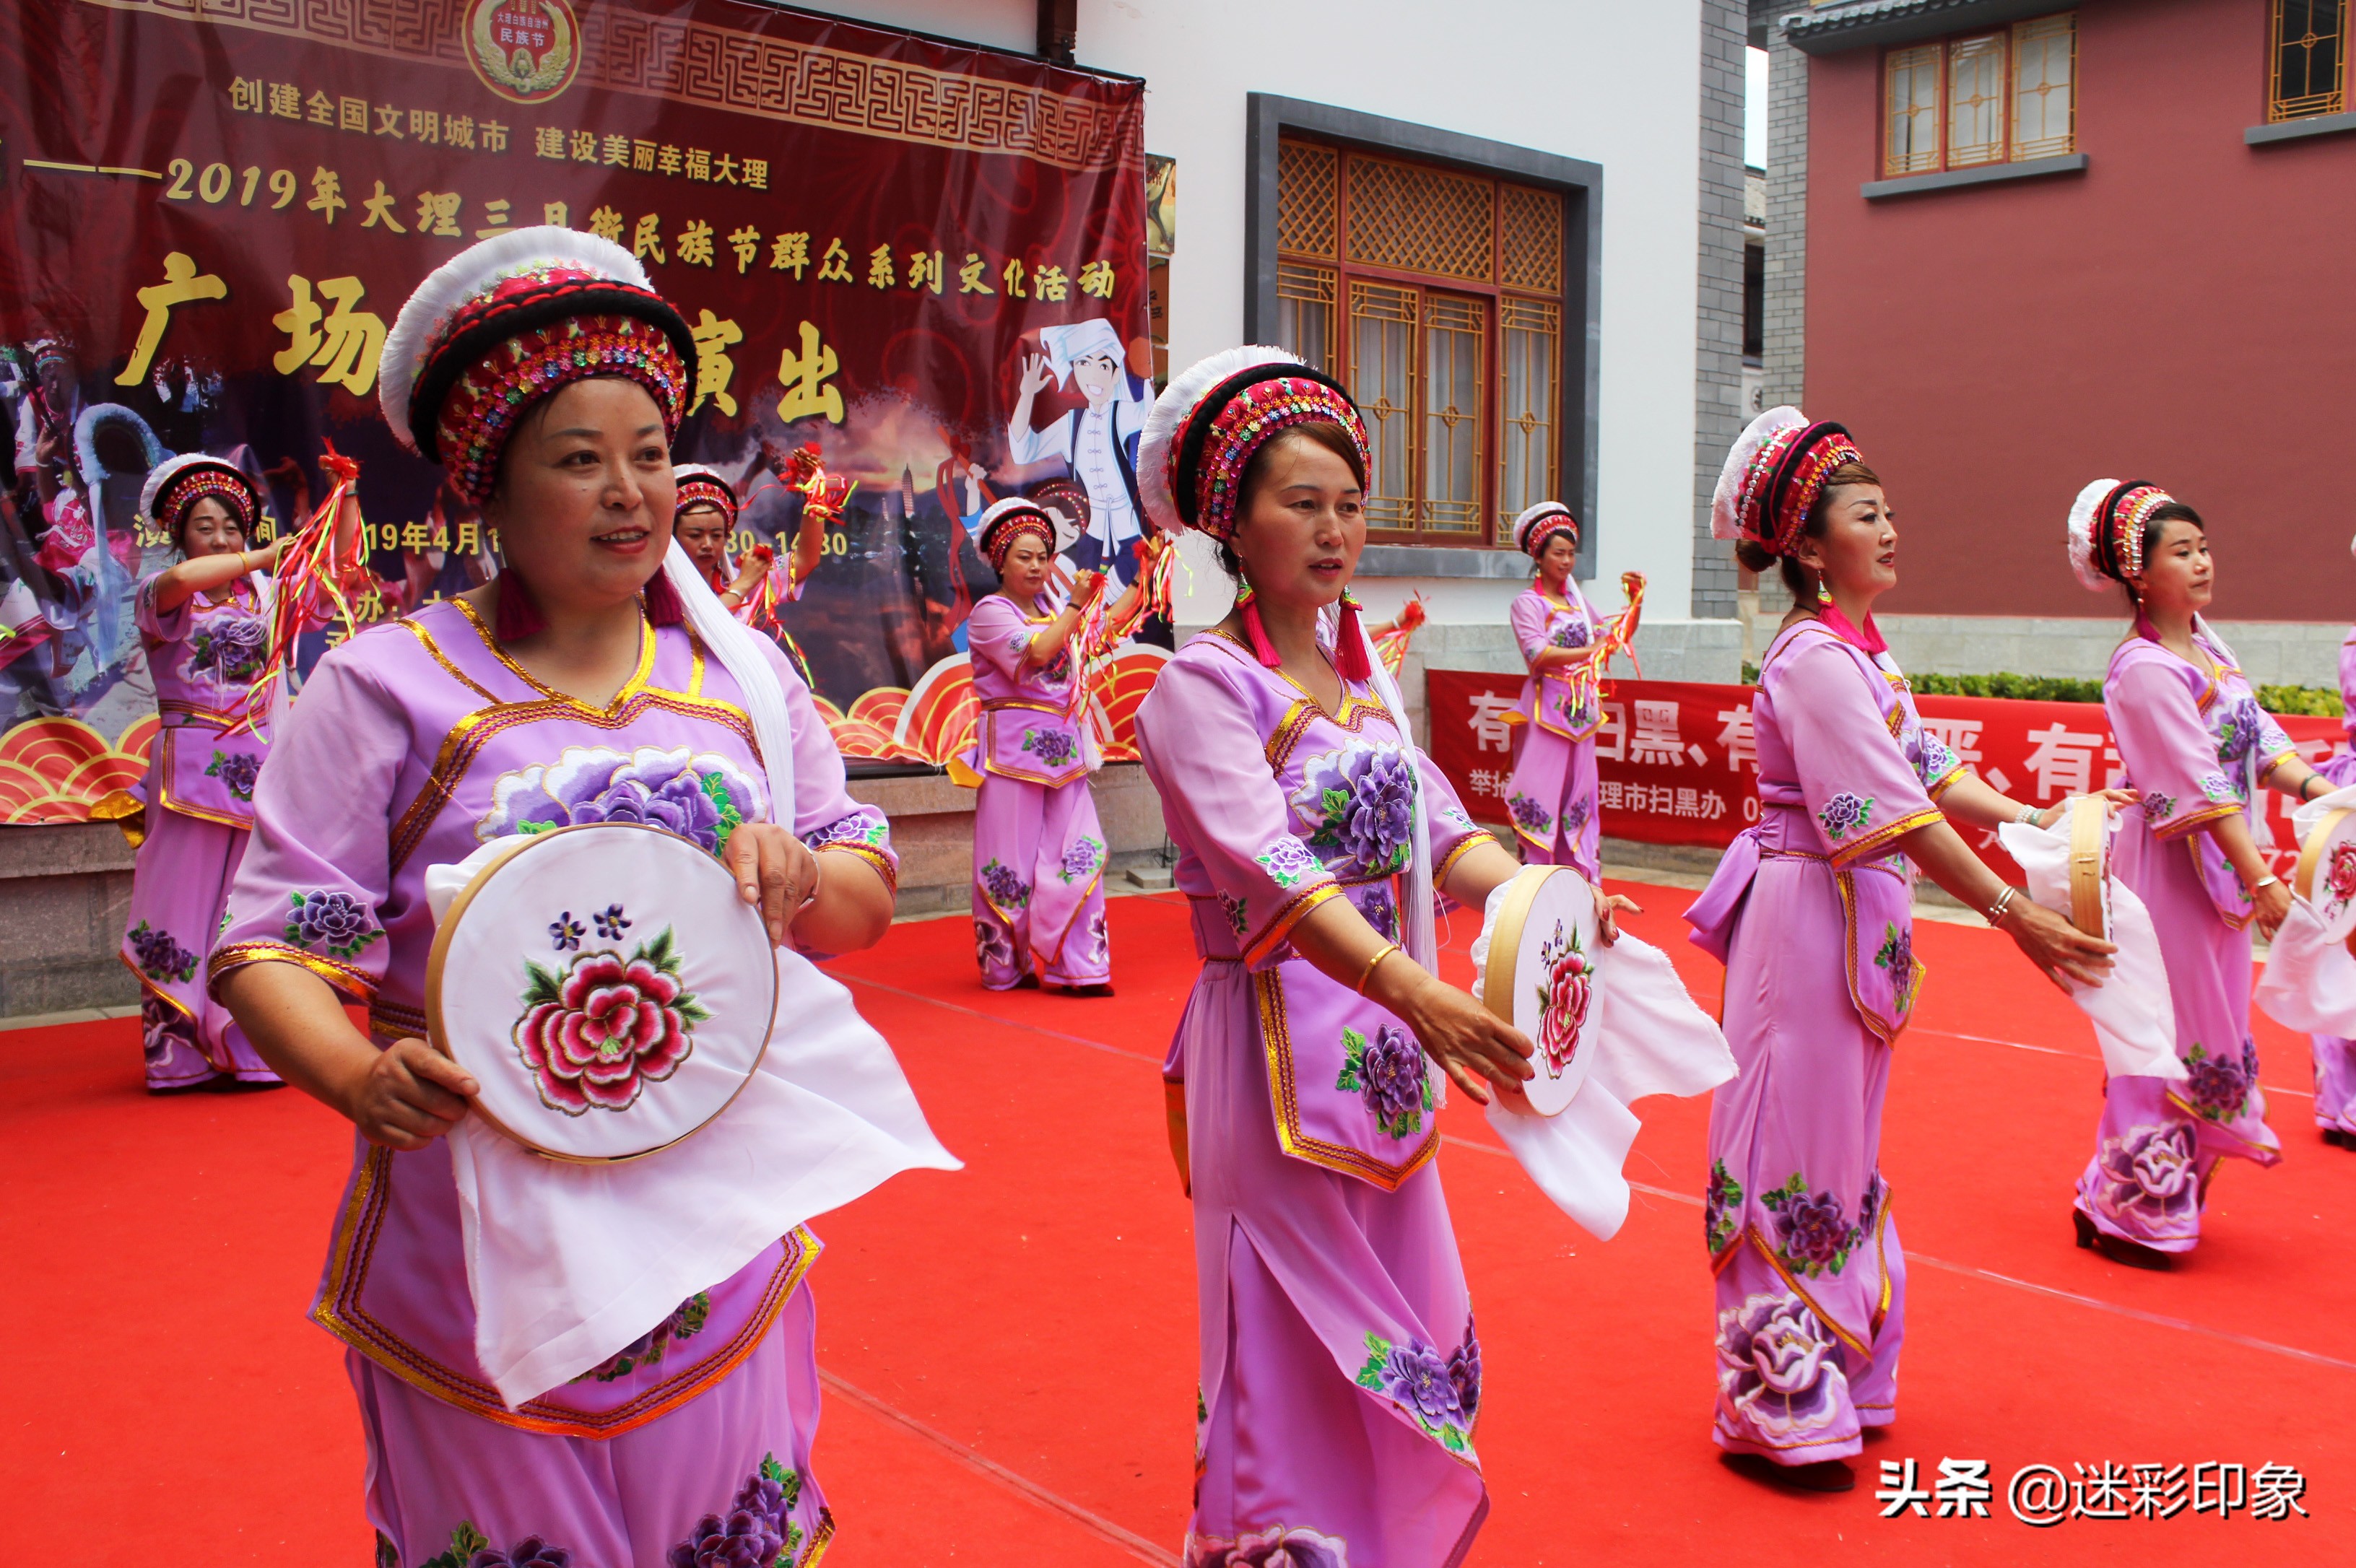 云南大理:载歌载舞欢庆三月街民族节